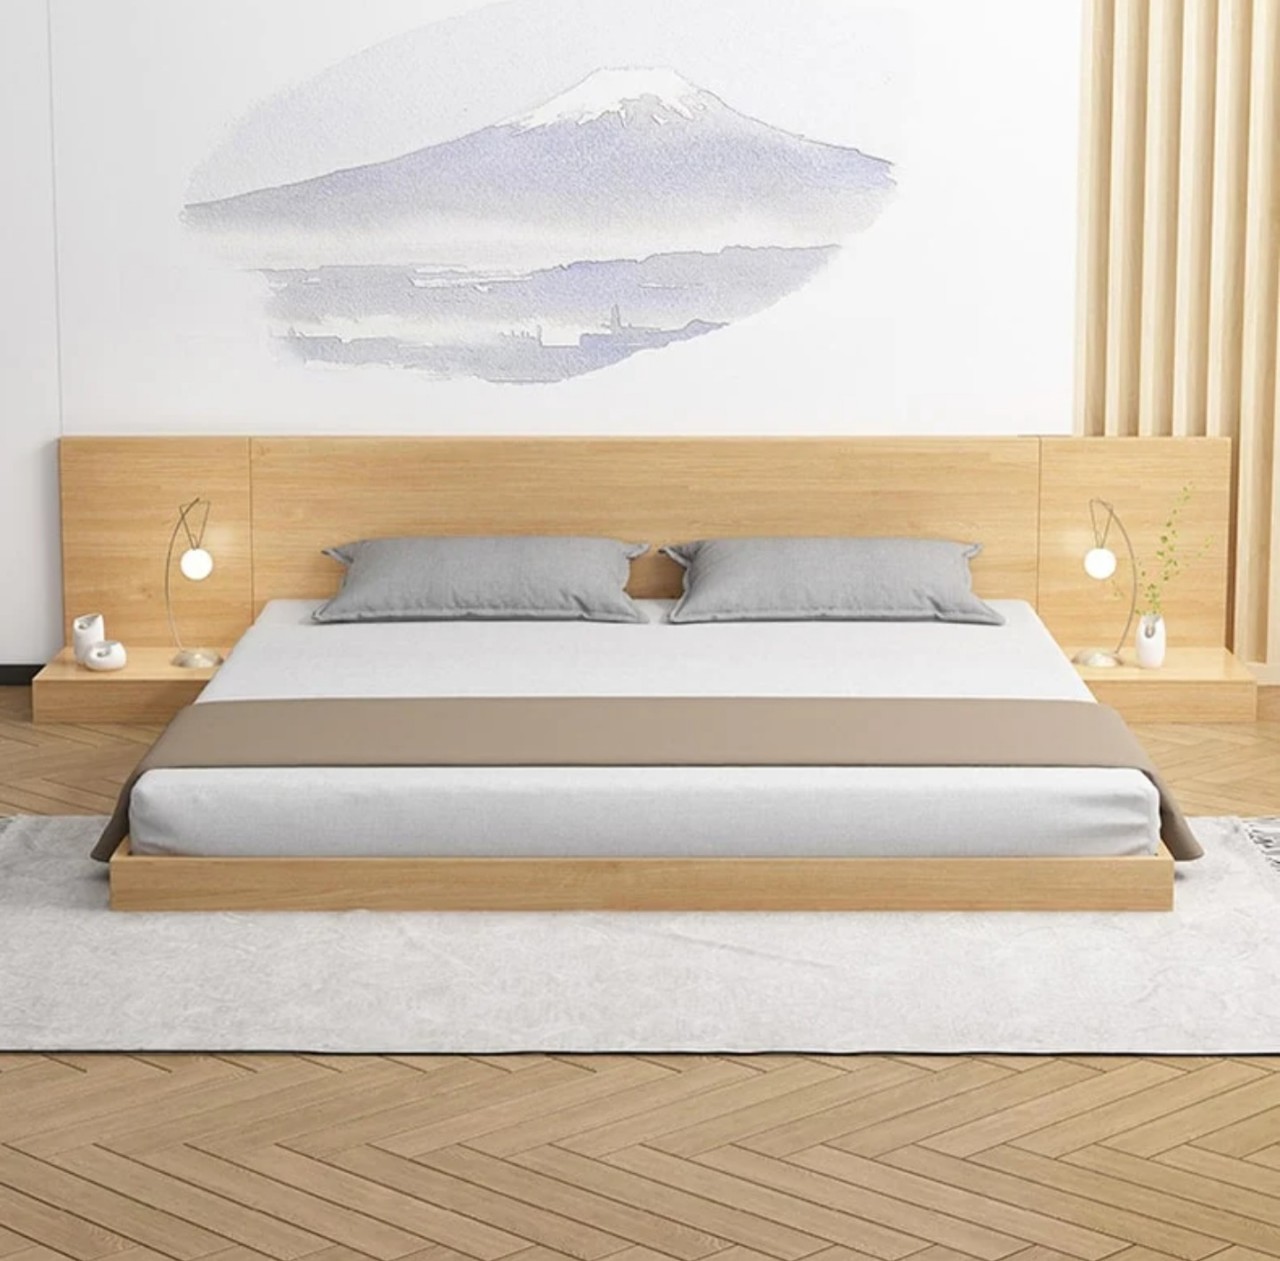 giường ngủ hiện đại giá rẻ - giường ngủ gỗ công nghiệp hiện đại đẹp - giường ngủ thông minh - giường ngủ MDF - Hòa Phát - nội thất phòng ngủ